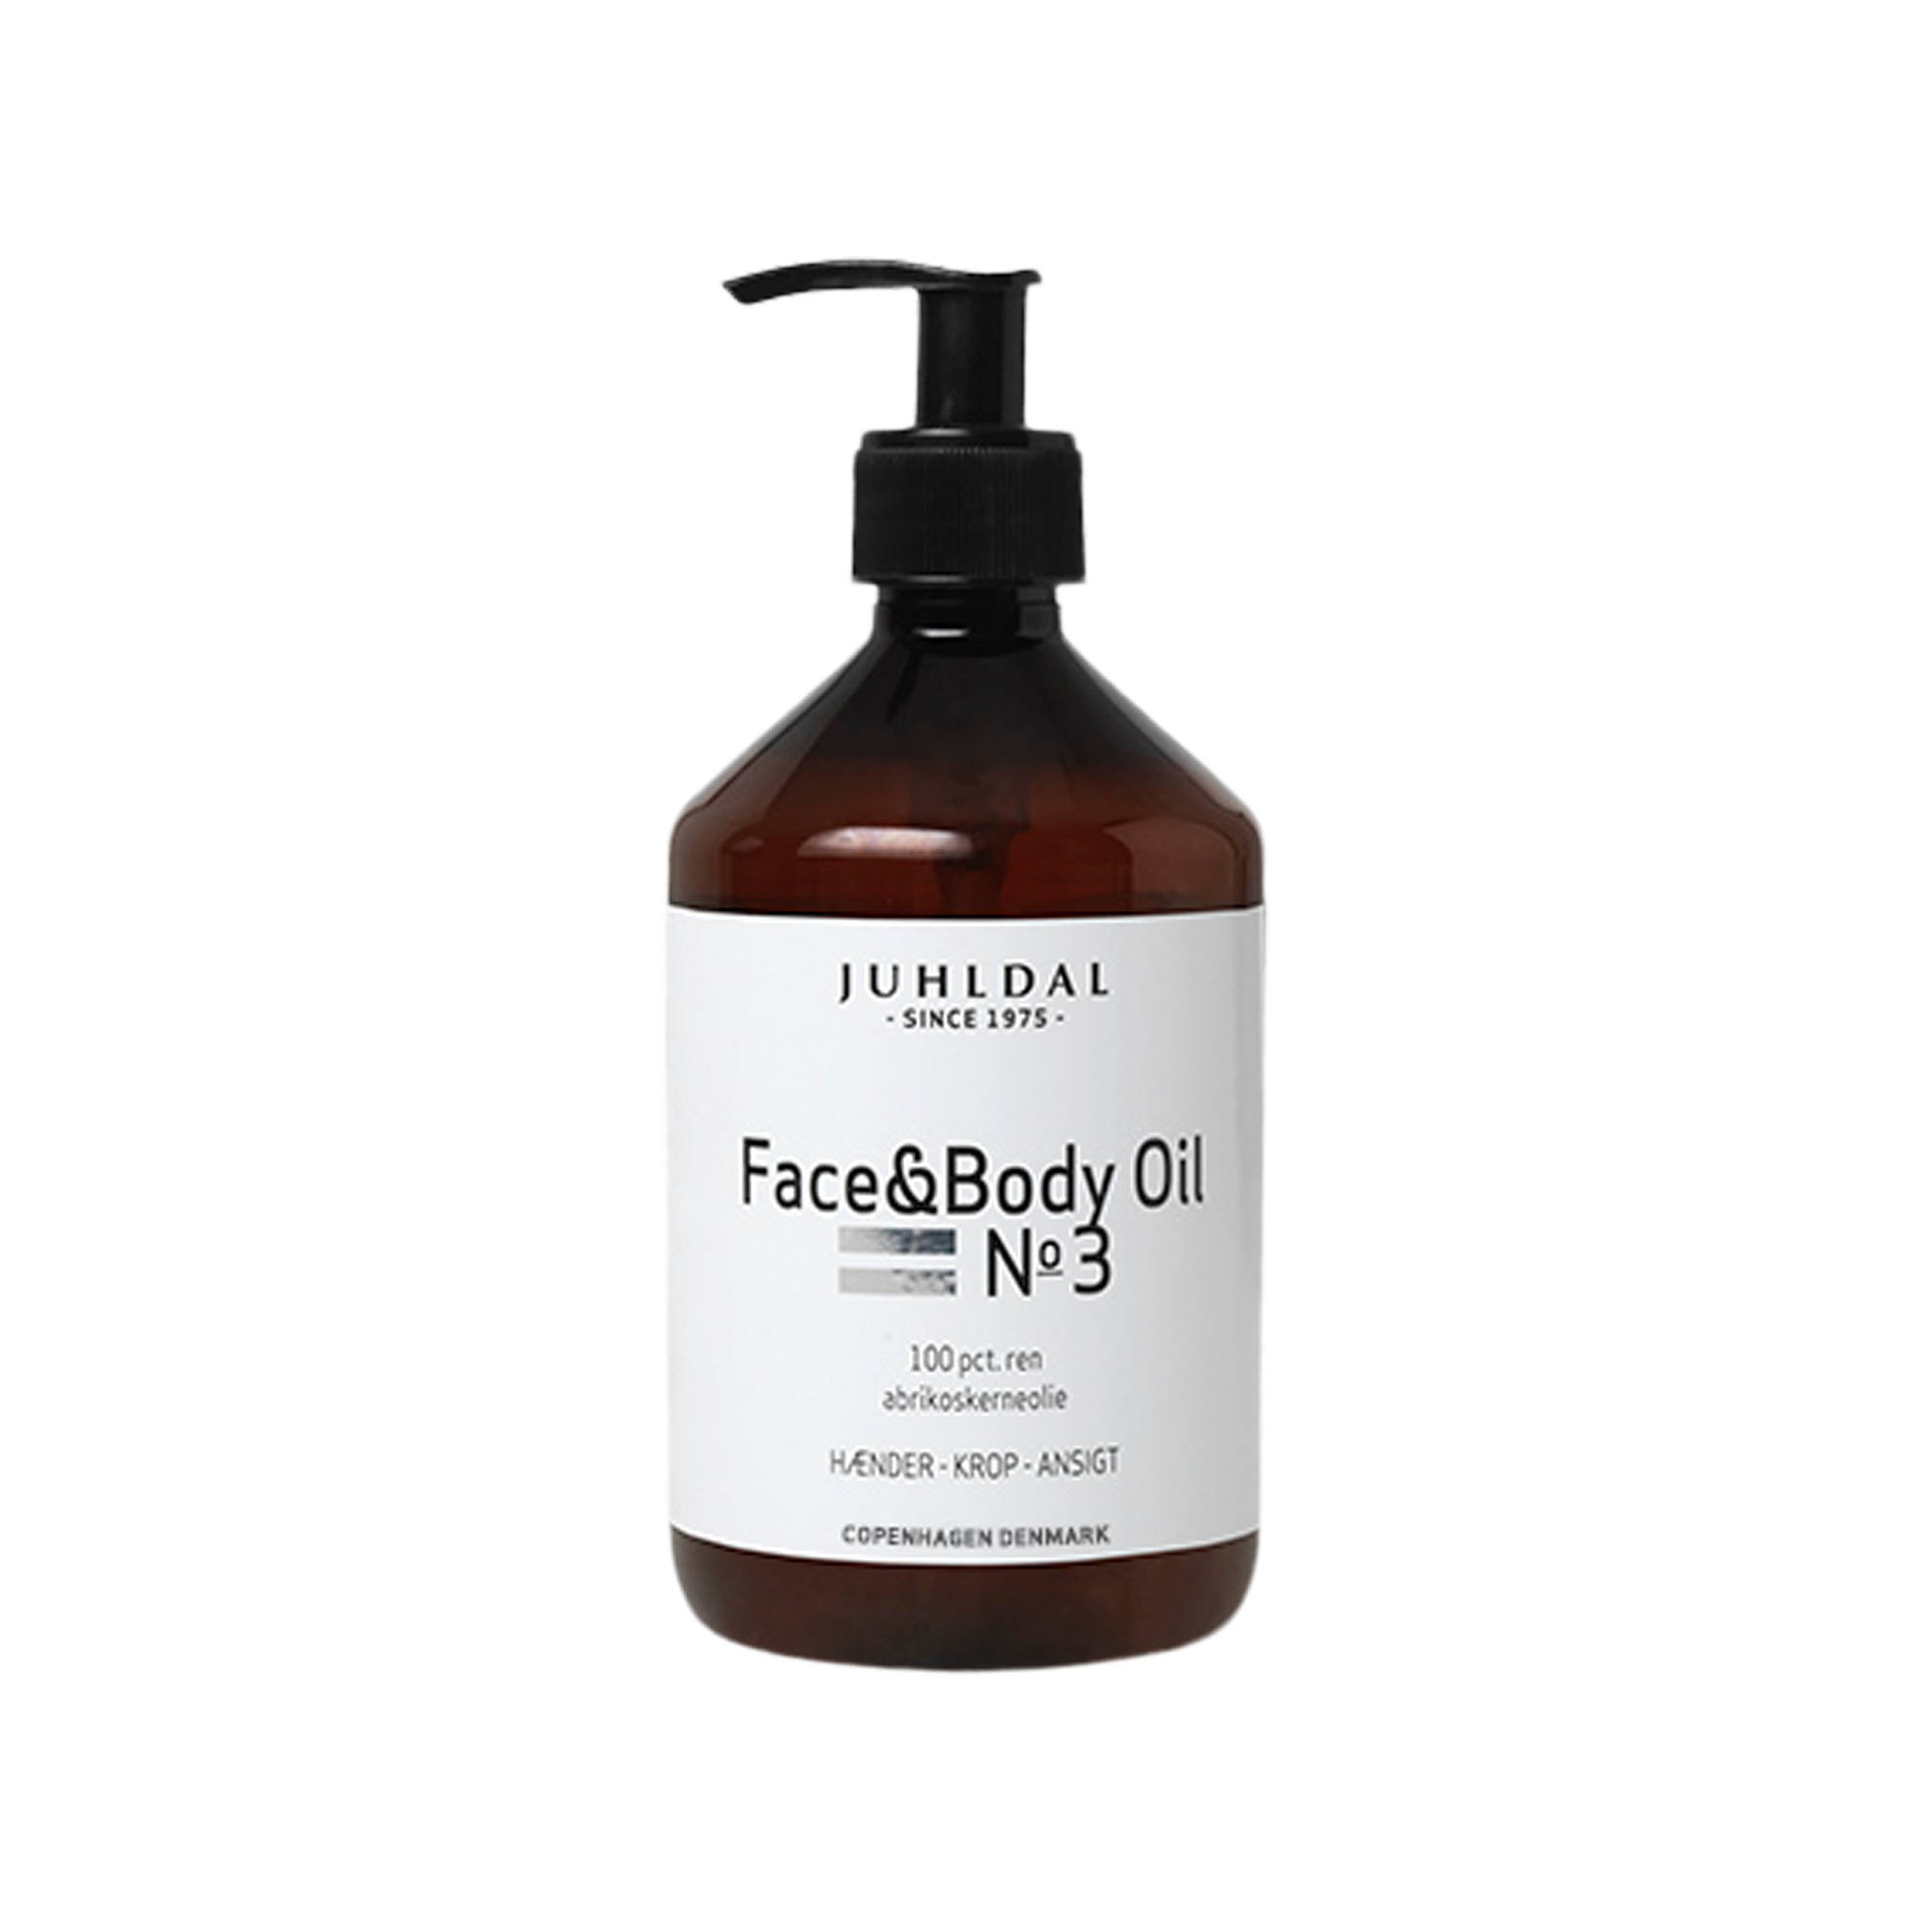  Face & Body Oil NO 3